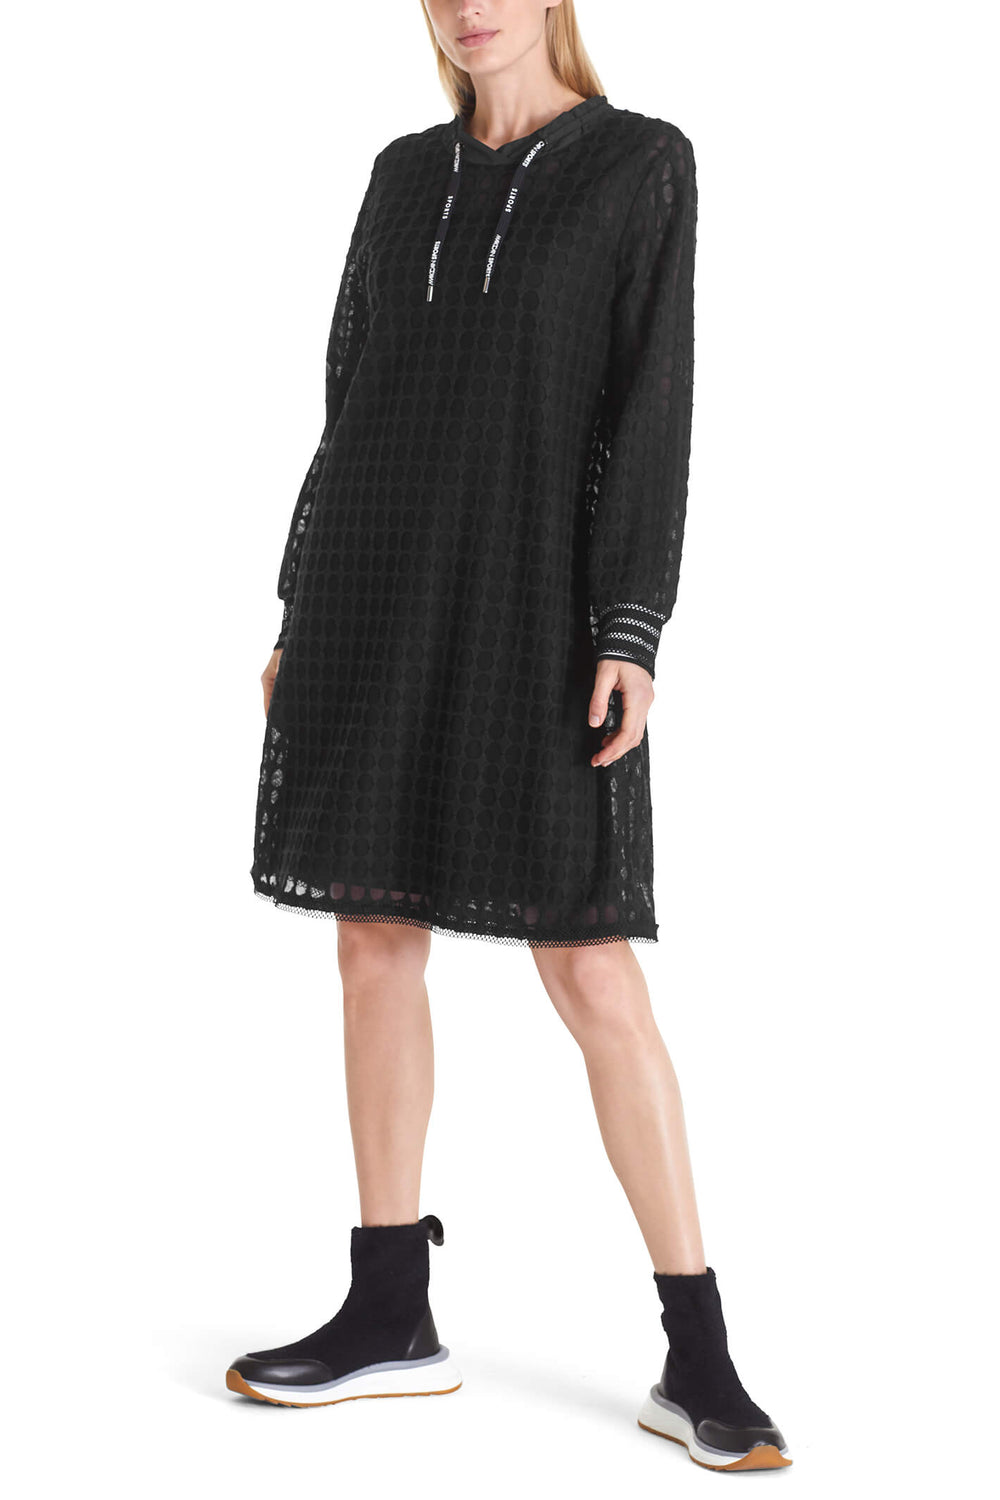 Marc Cain TS 21.43 J49 Black Mesh Spot Jersey Dress - Olivia Grace Fashion